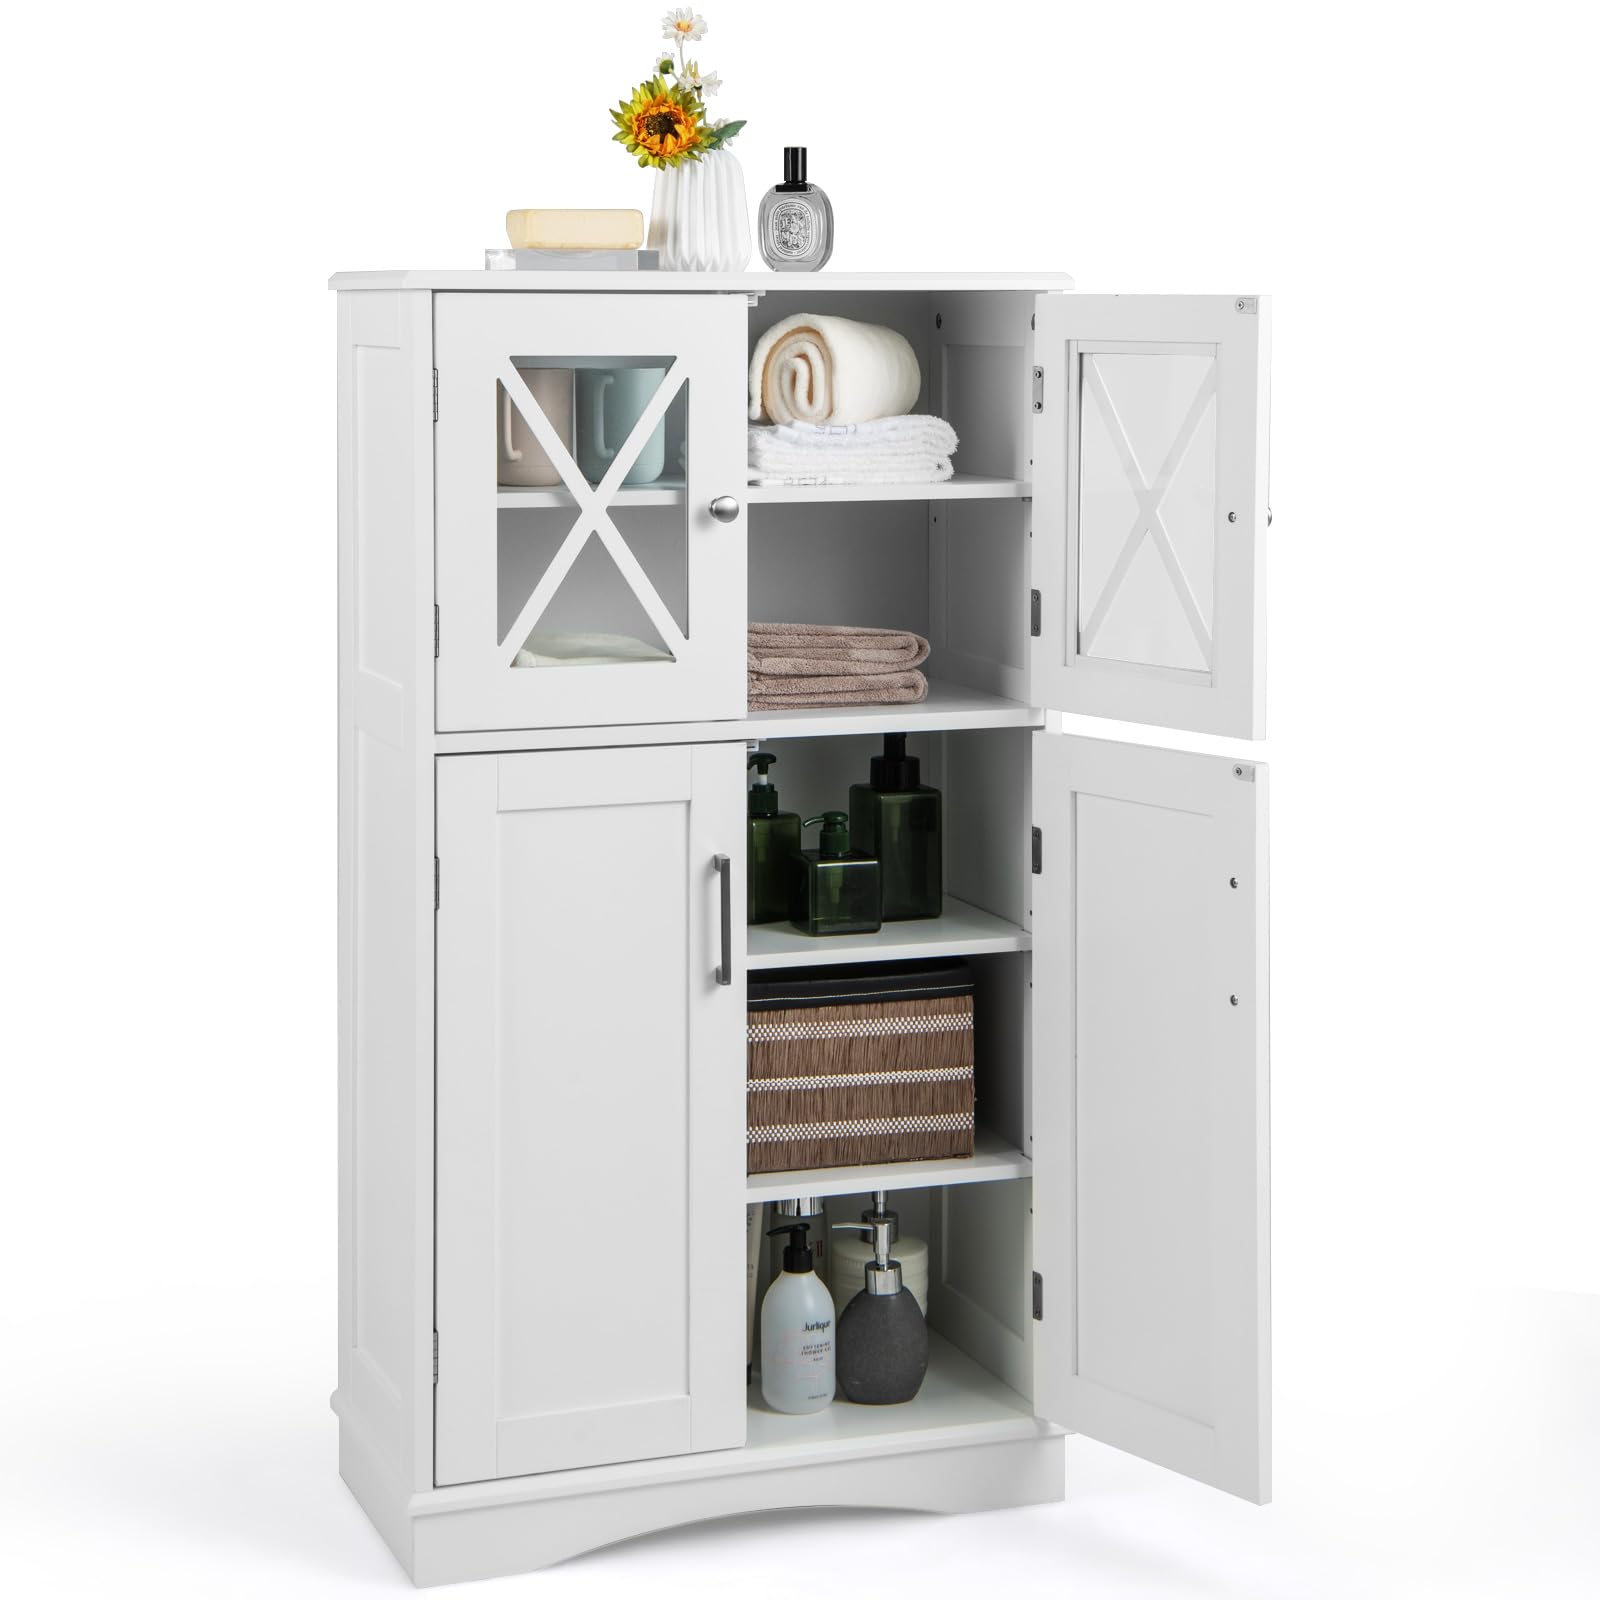 Giantex Bathroom Floor Storage Cabinet - Linen Floor Cabinet with Doors and Adjustable Shelves (White)